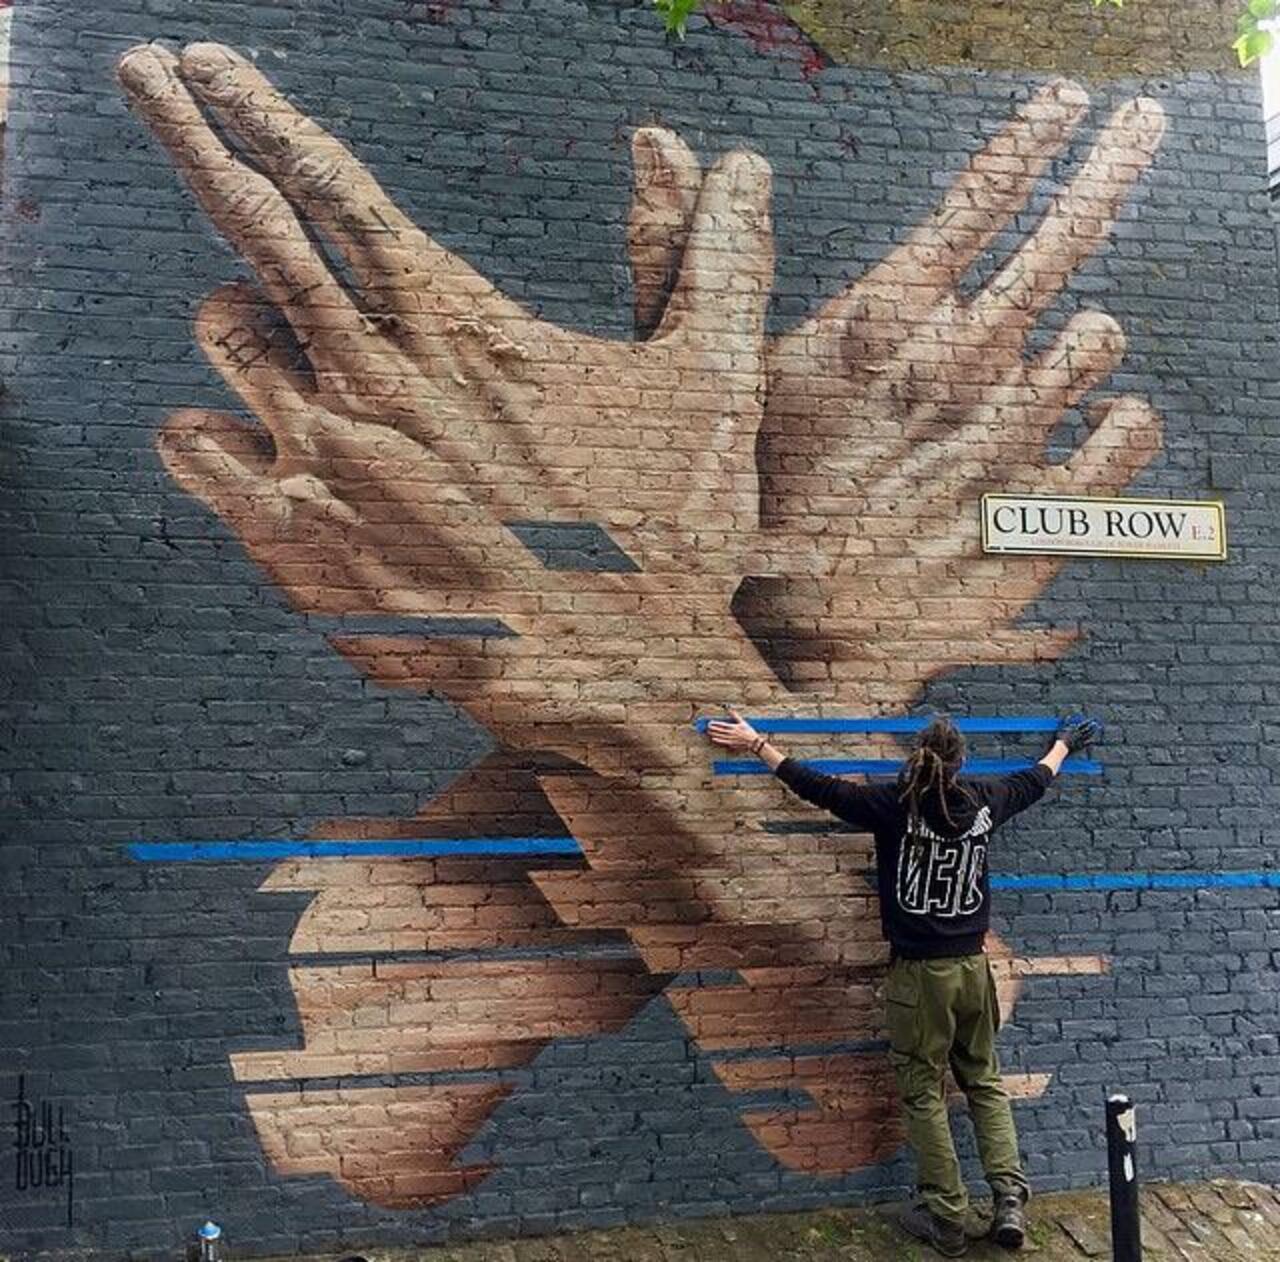 New Street Art by James Bullough, in Shoreditch, London 

#art #arte #graffiti #streetart http://t.co/iStFmvmQJq